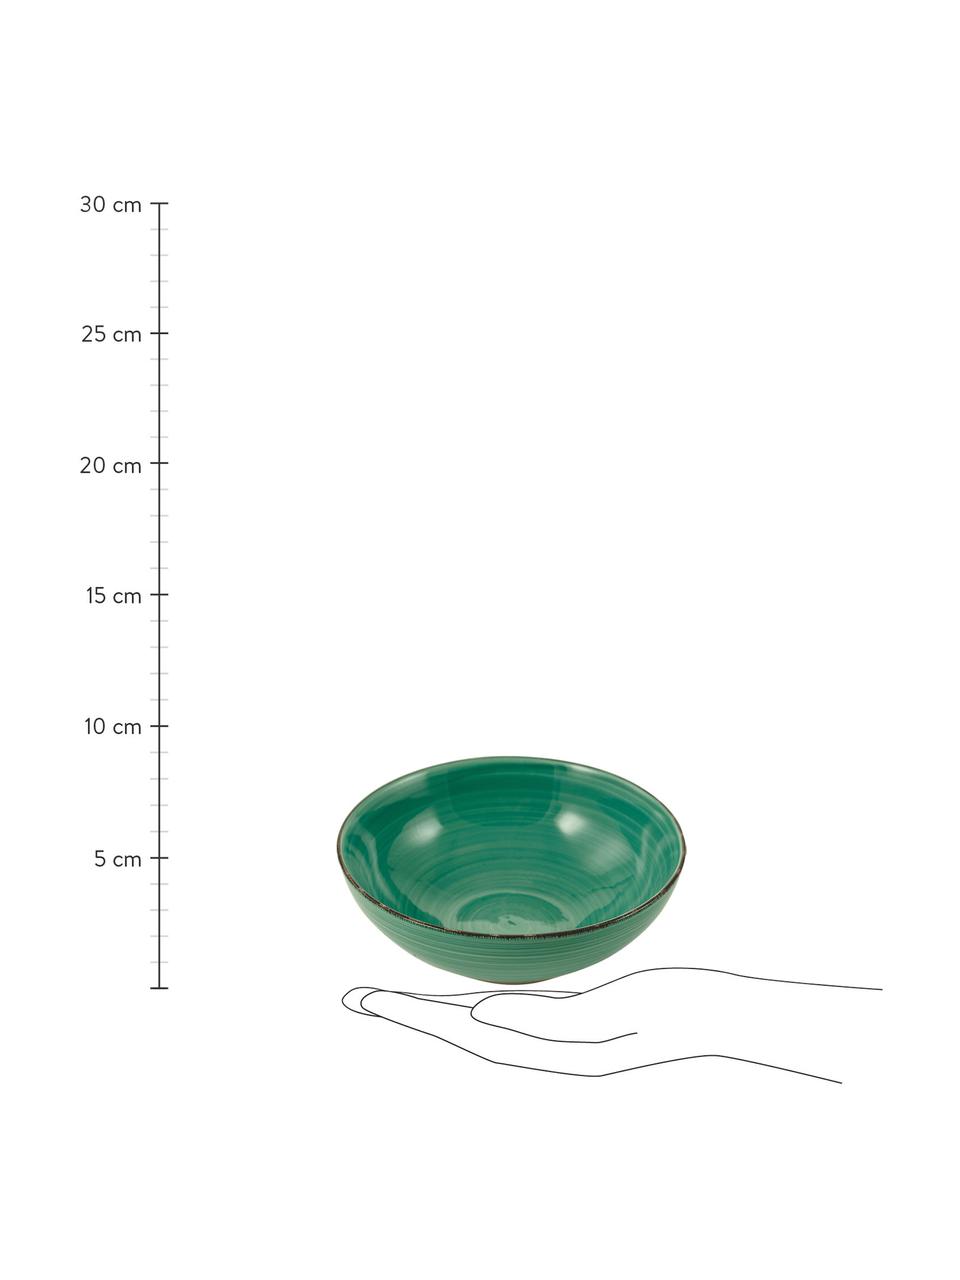 Handbeschilderde serveerschalenset Baita in groen Ø 26 en Ø 23 cm, 2-delig, Handbeschilderde keramiek (hard dolomiet), Groen, Set met verschillende formaten